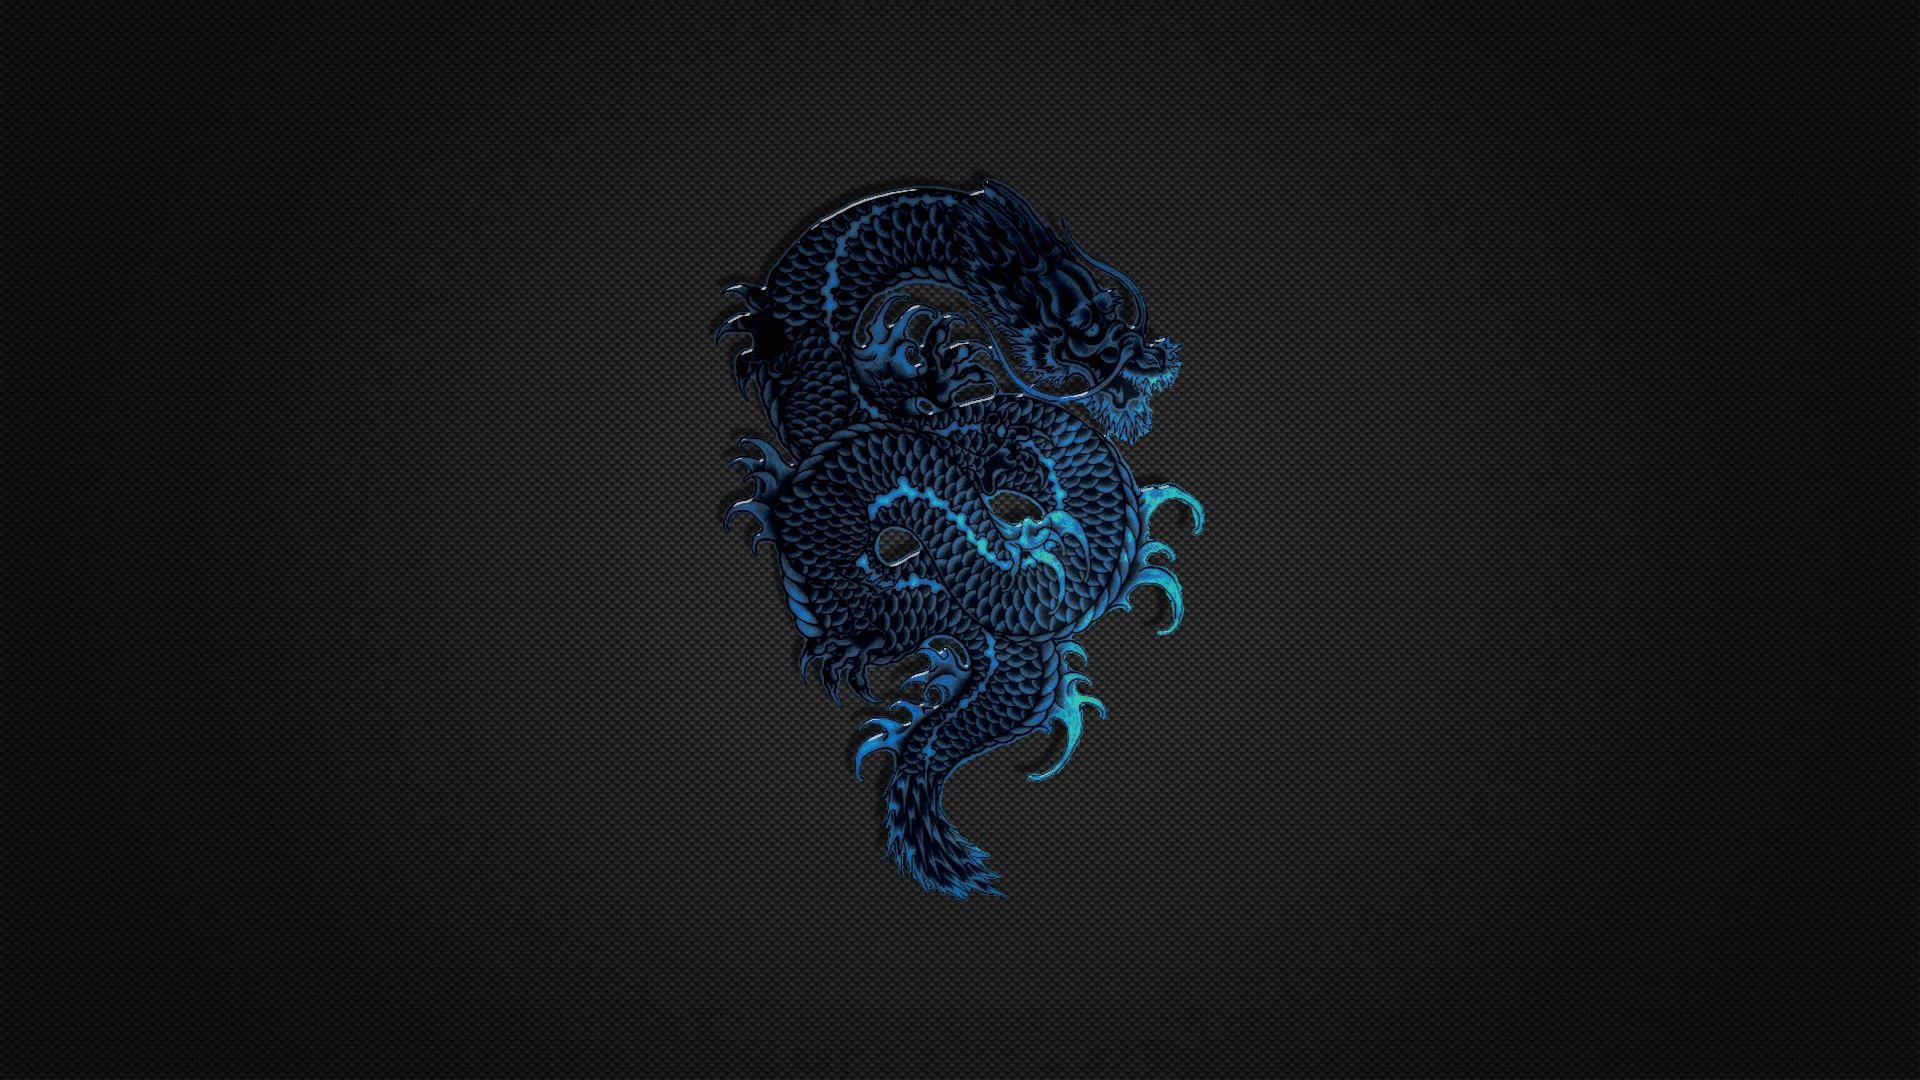 1920x1080 Wallpaper-hd-1080p-blue-dragon-logo-on-black-